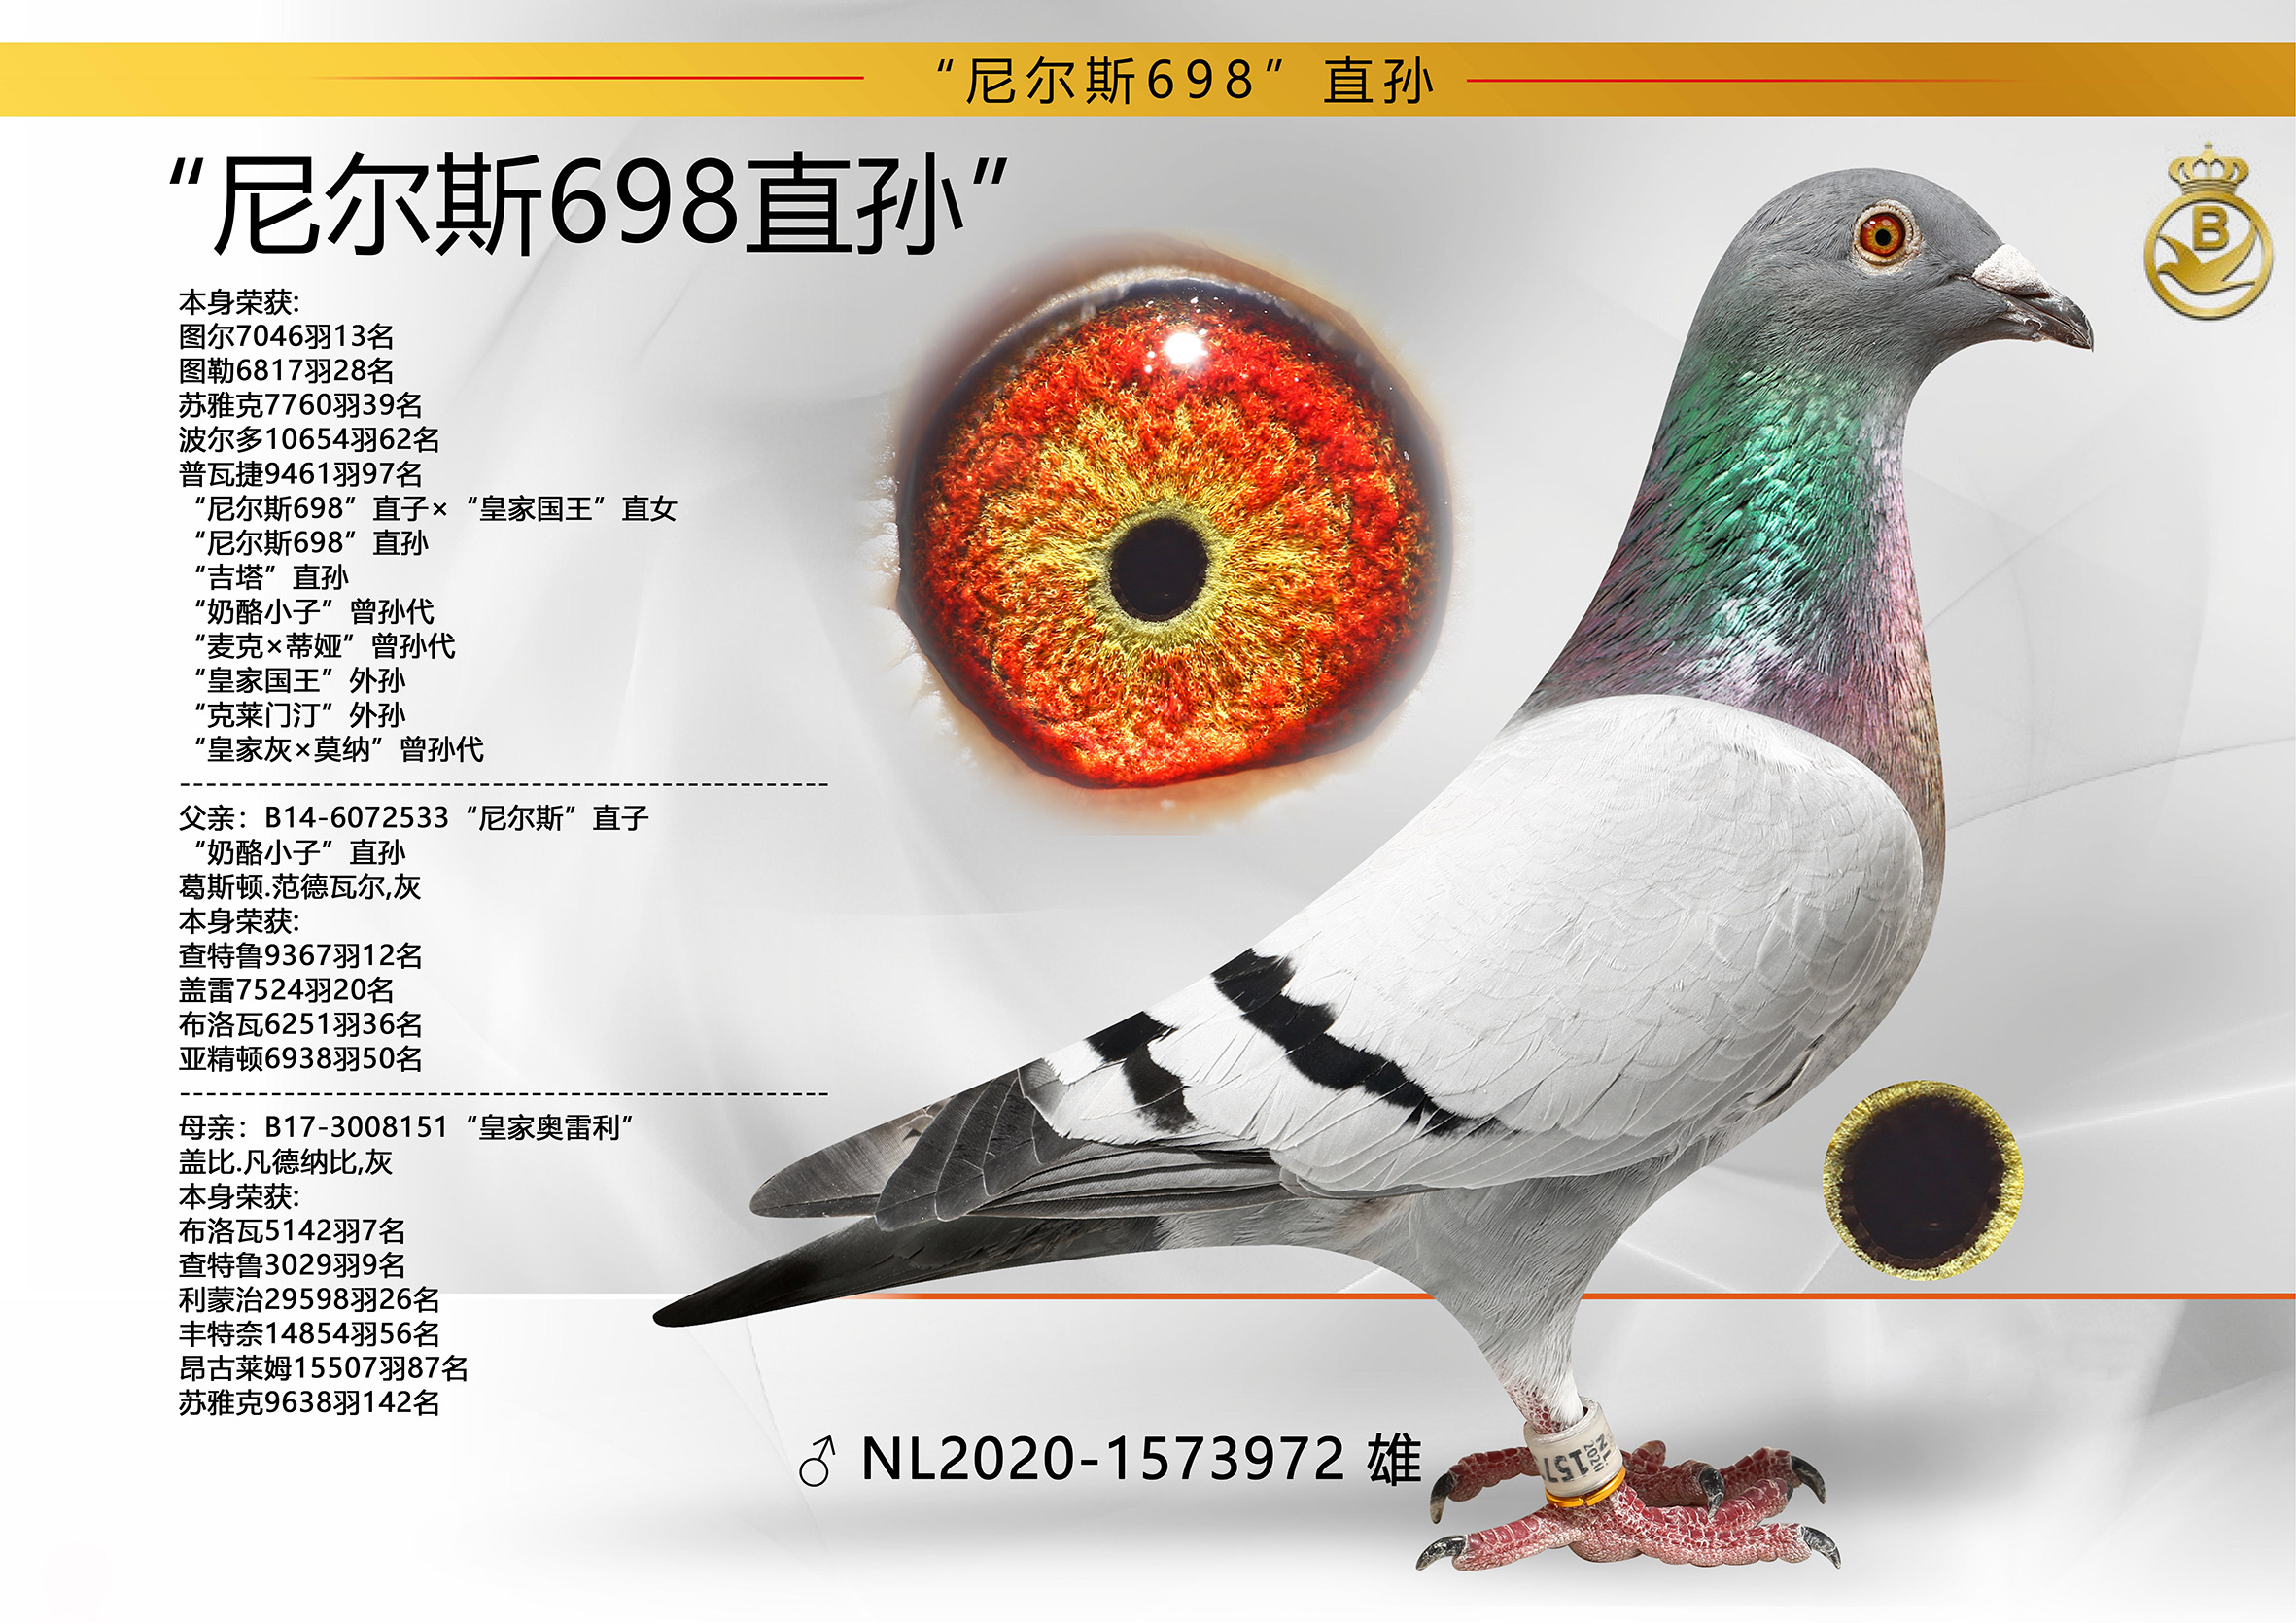 本身荣获: 图尔7046羽13名“尼尔斯698”直孙“吉塔-信鸽在线拍卖平台-中国 